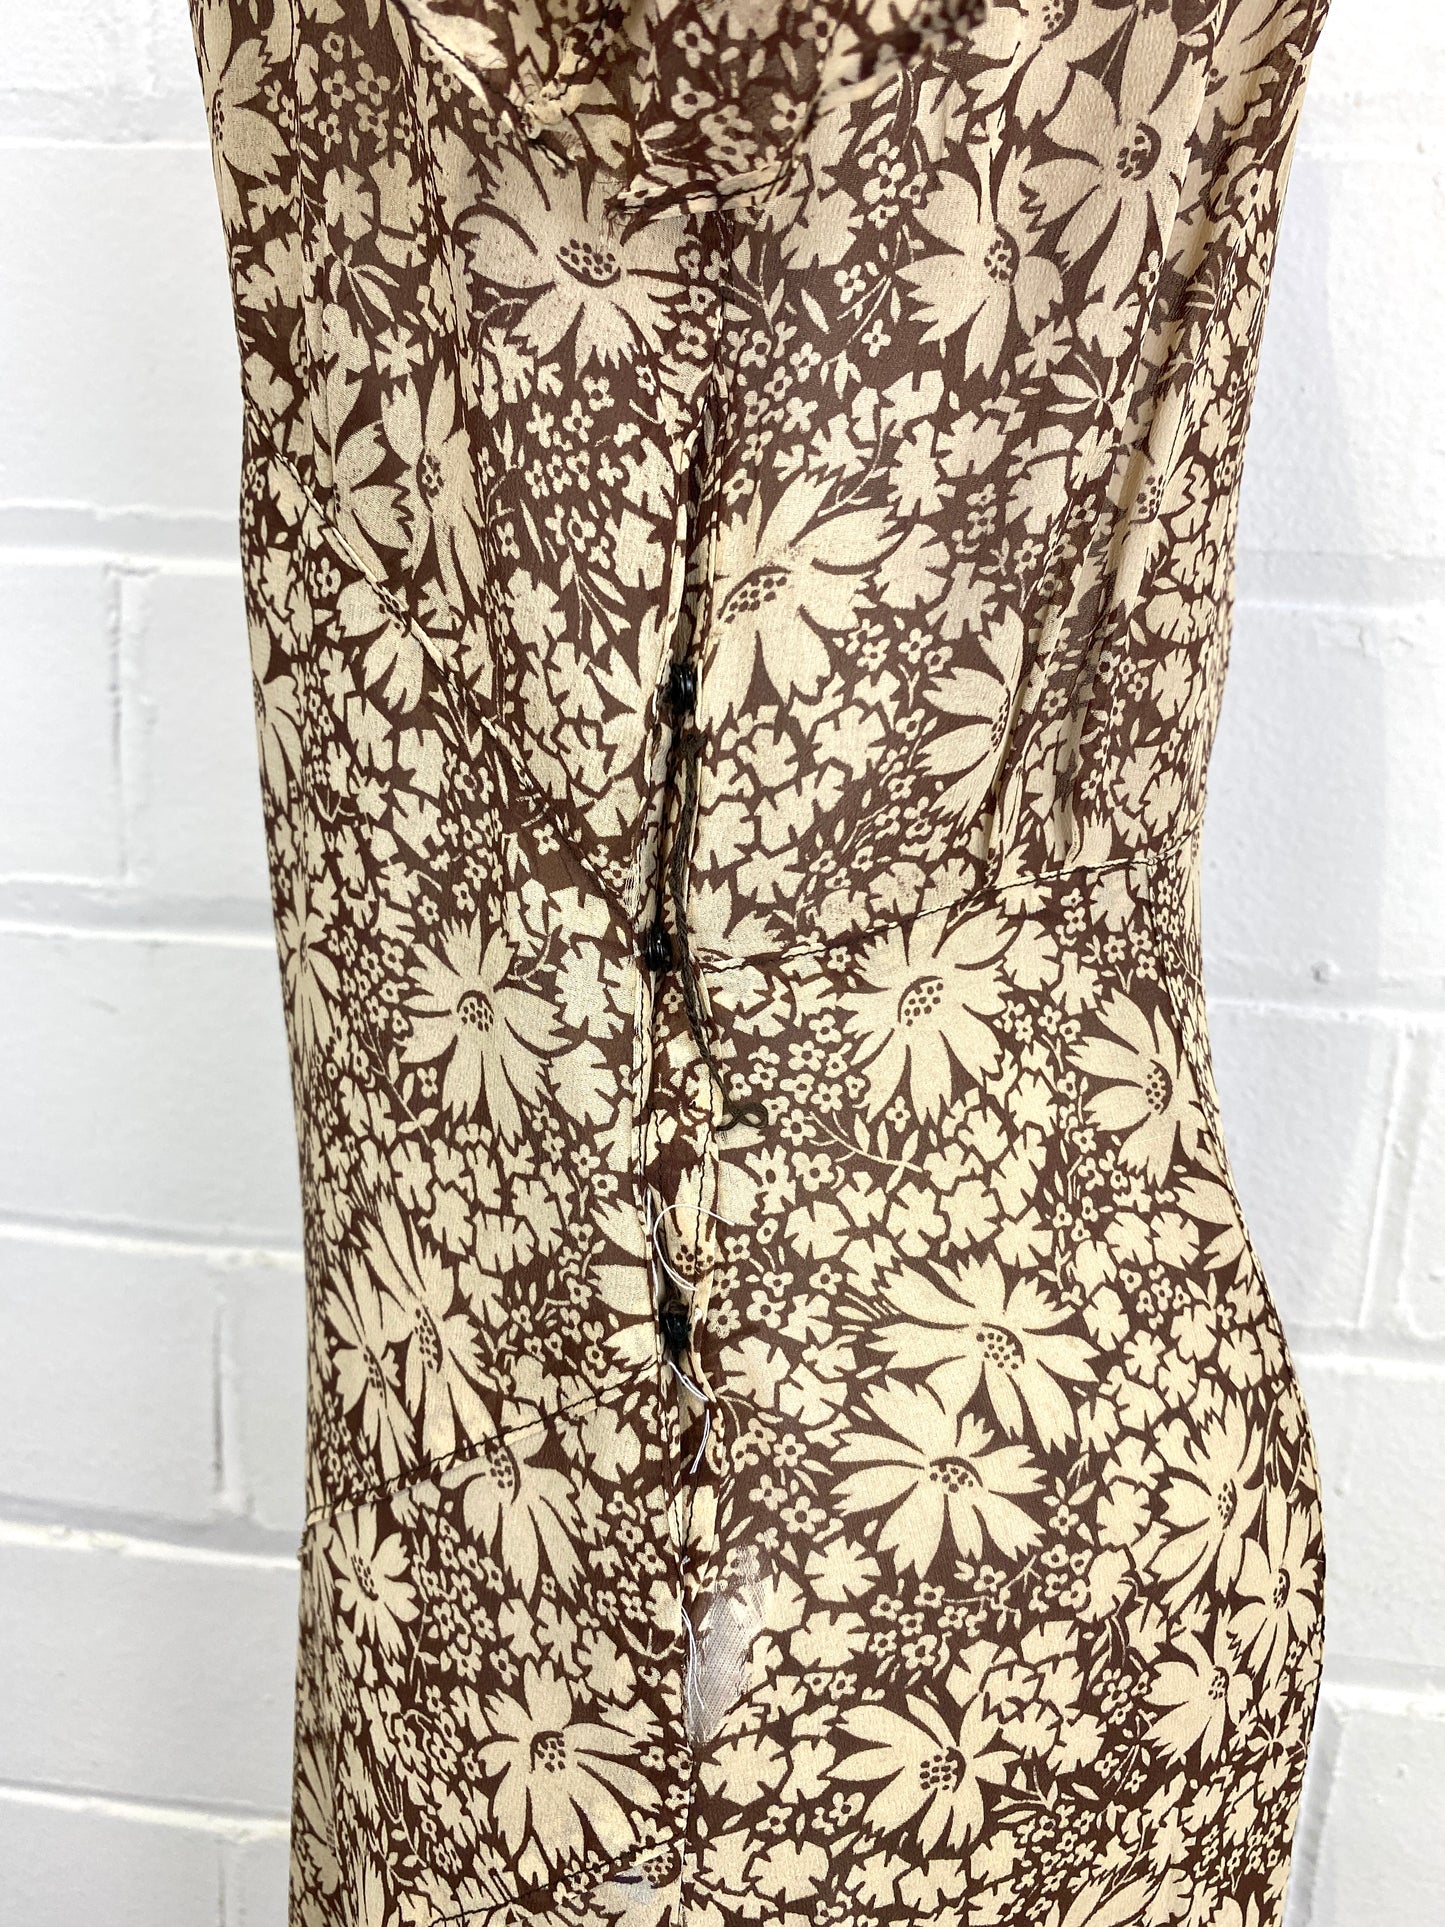 Vintage 1930s Floral Silk 2-Piece Dress & Jacket Set with Belt, Distressed